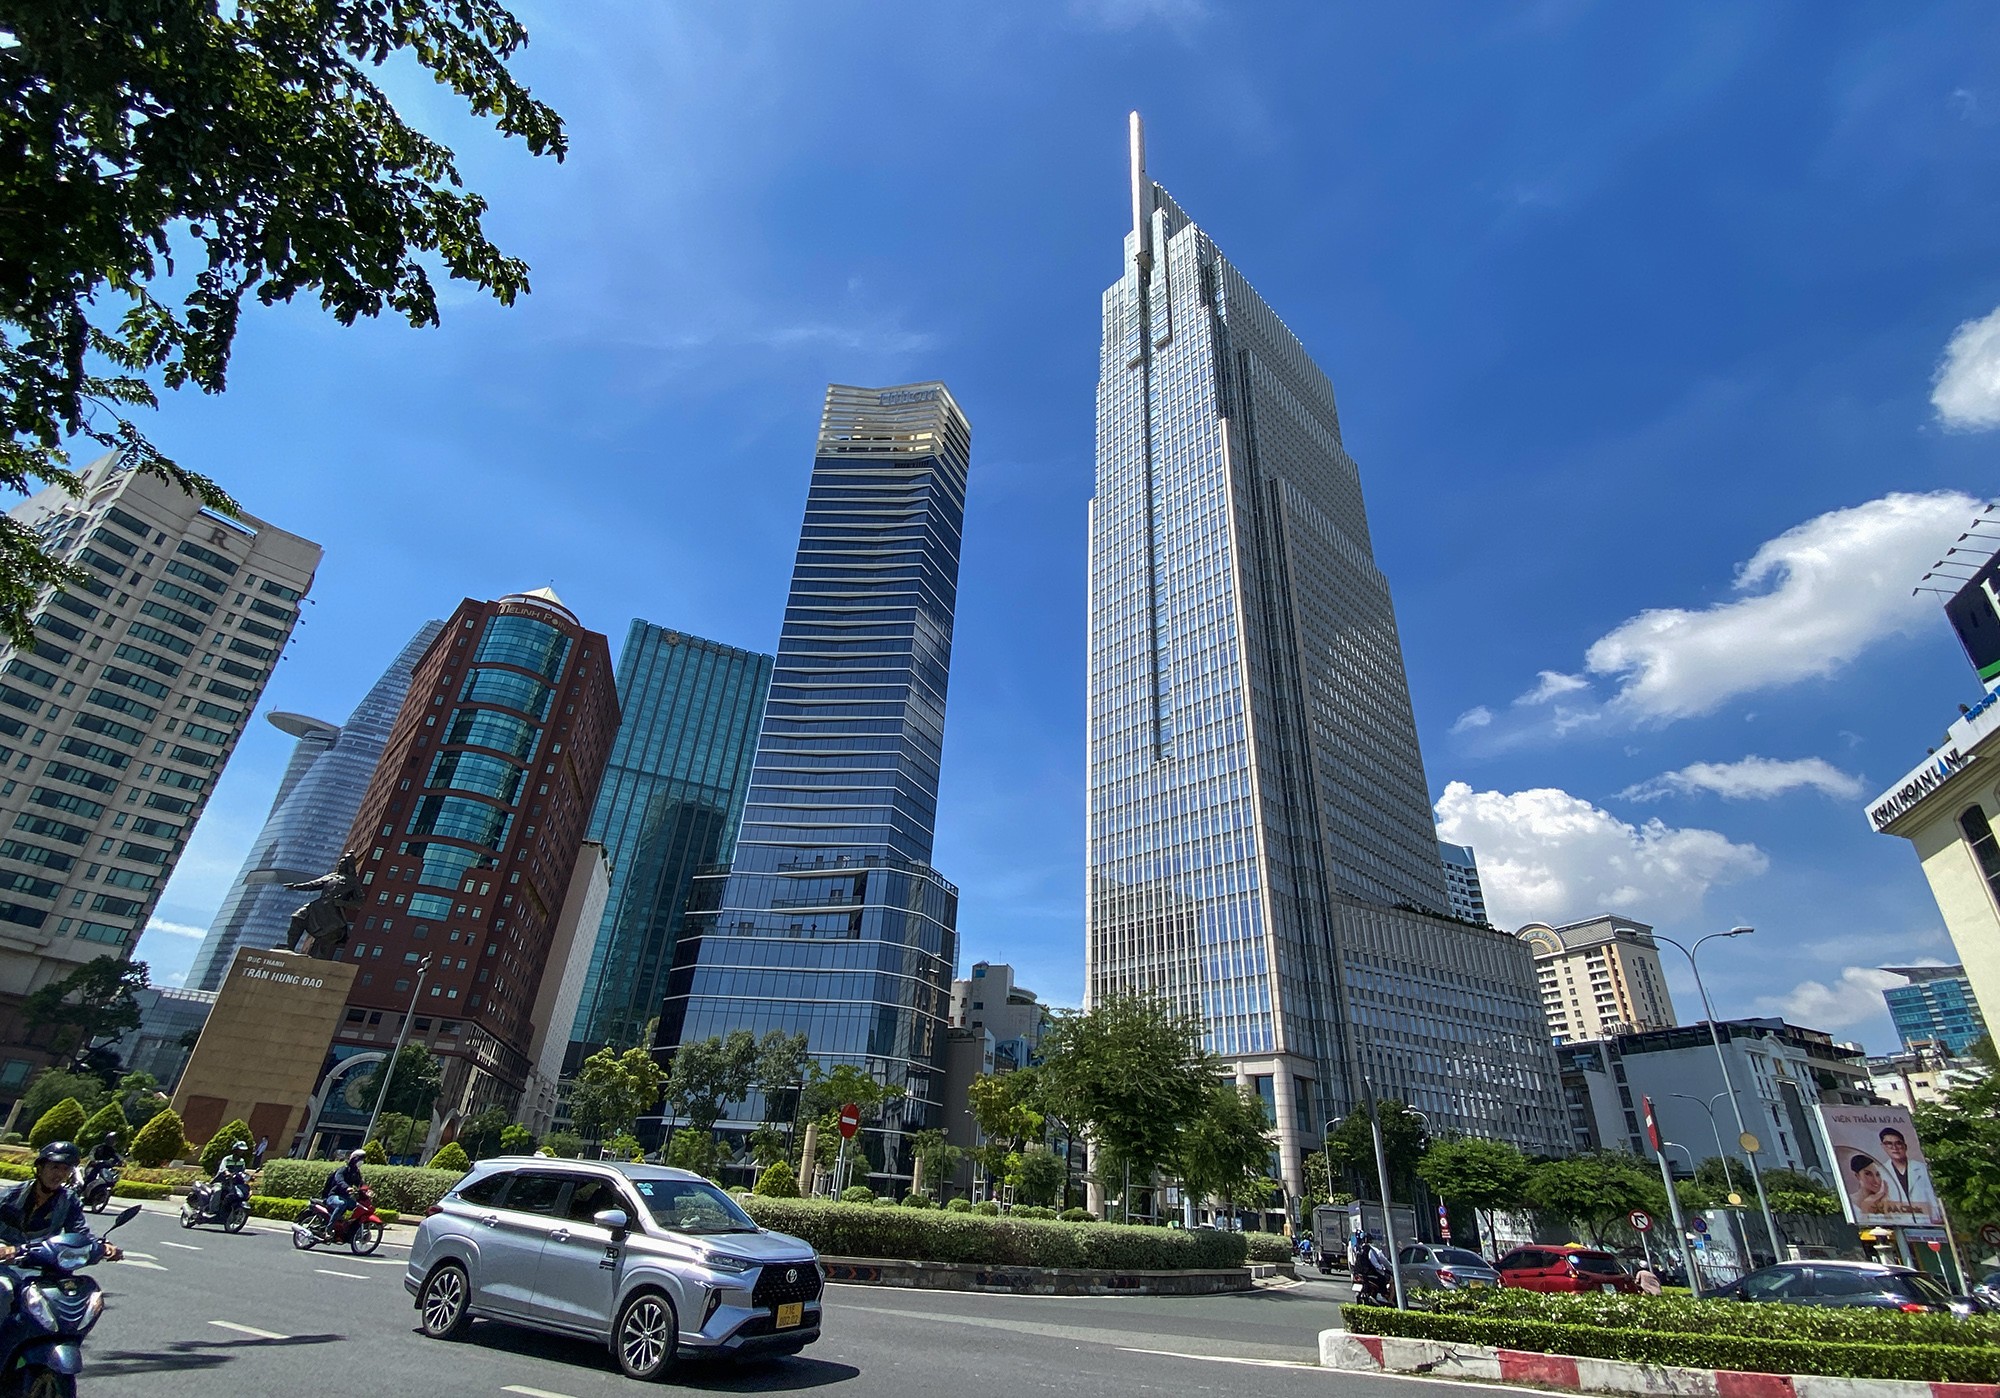 Vietcombank Tower do Liên doanh Vietcombank-Bonday (Hongkong)-Benthanh làm chủ đầu tư, có tổng diện tích sàn 71.000m2.&nbsp;Tòa nhà được hoàn thành năm 2015. Thời điểm đưa vào sử dụng, Vietcombank Tower là toà nhà cao thứ 4 tại Việt Nam sau cao ốc Keangnam Lanmark 72 (Hà Nội - 336m), Hanoi Lotte Center (Hà Nội - 267m), Bitexco Financial Tower (TP.HCM - 262m).